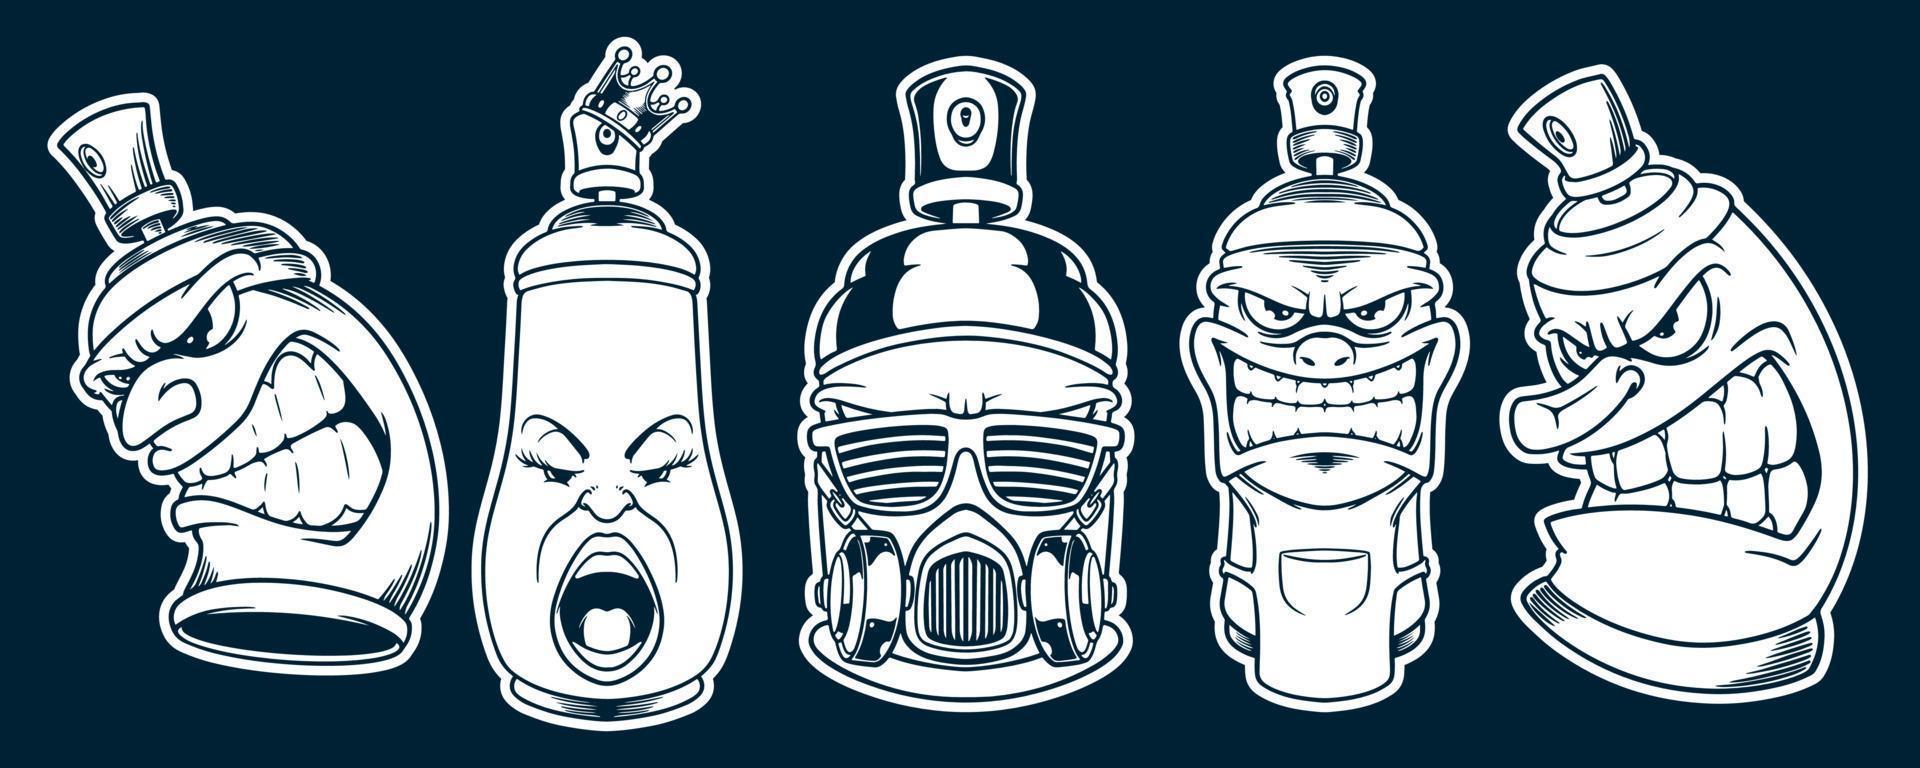 spray can graffiti mascot vector illustration